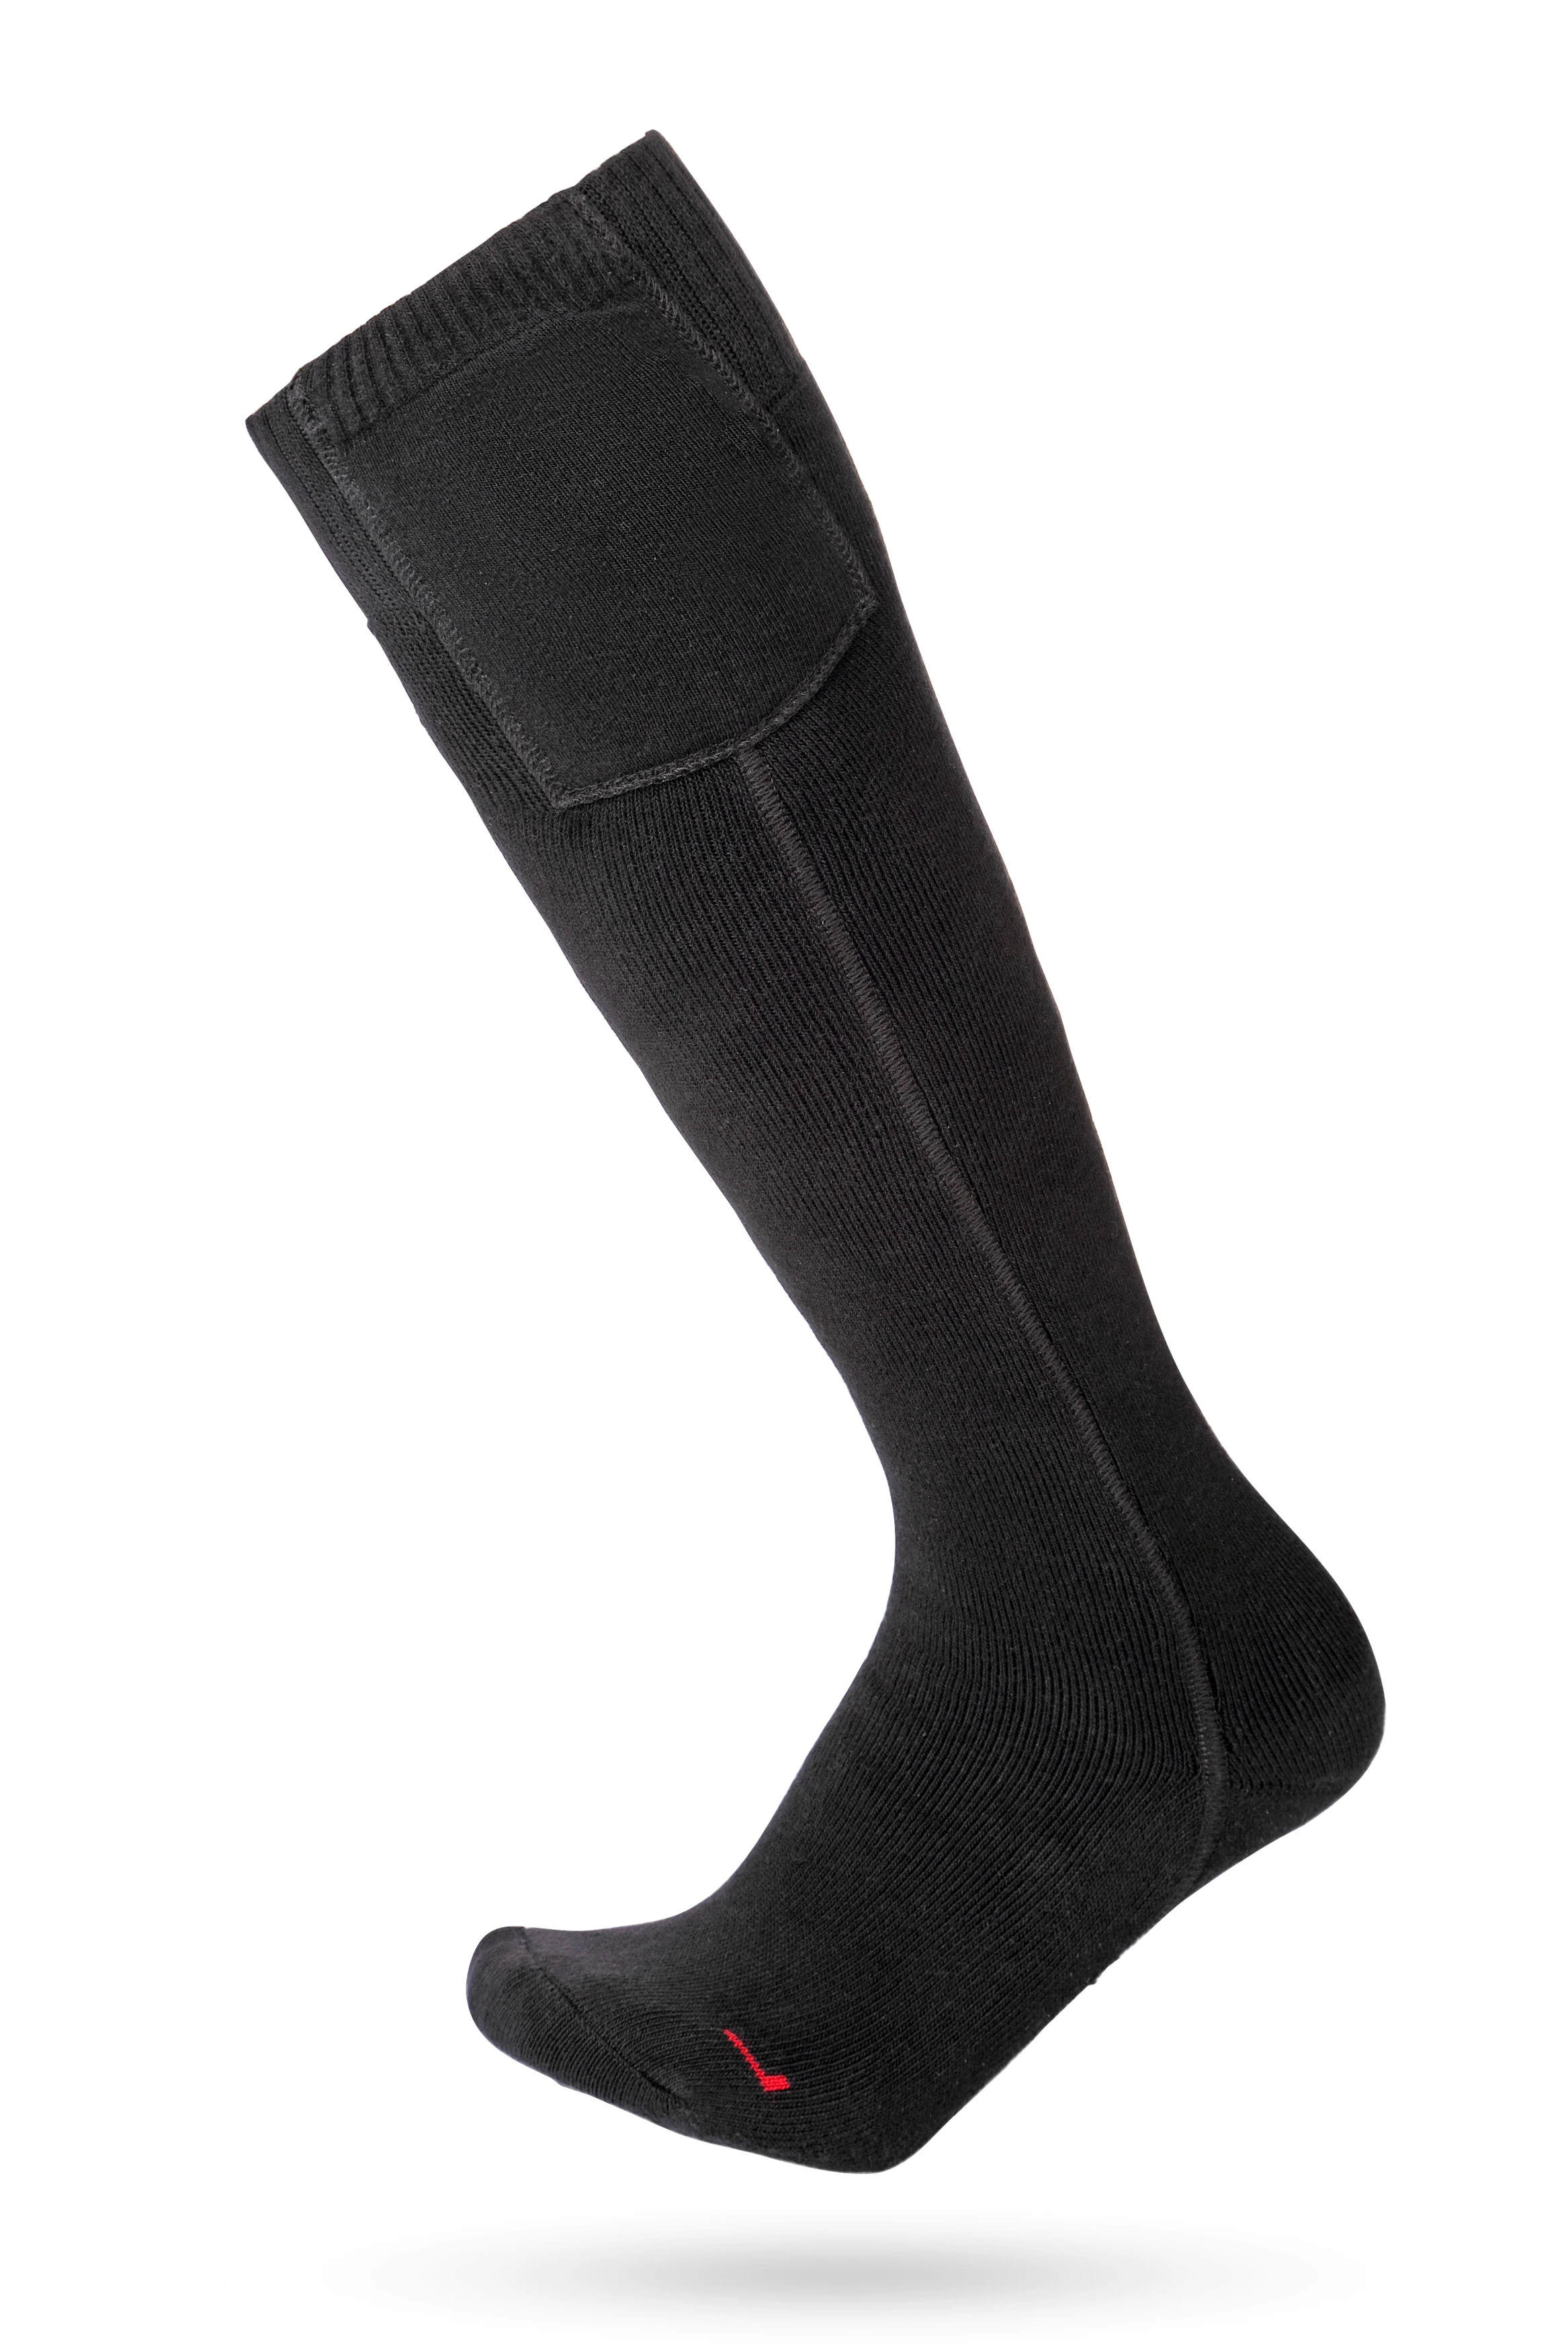 wireless rechargeable winter heated socks for men